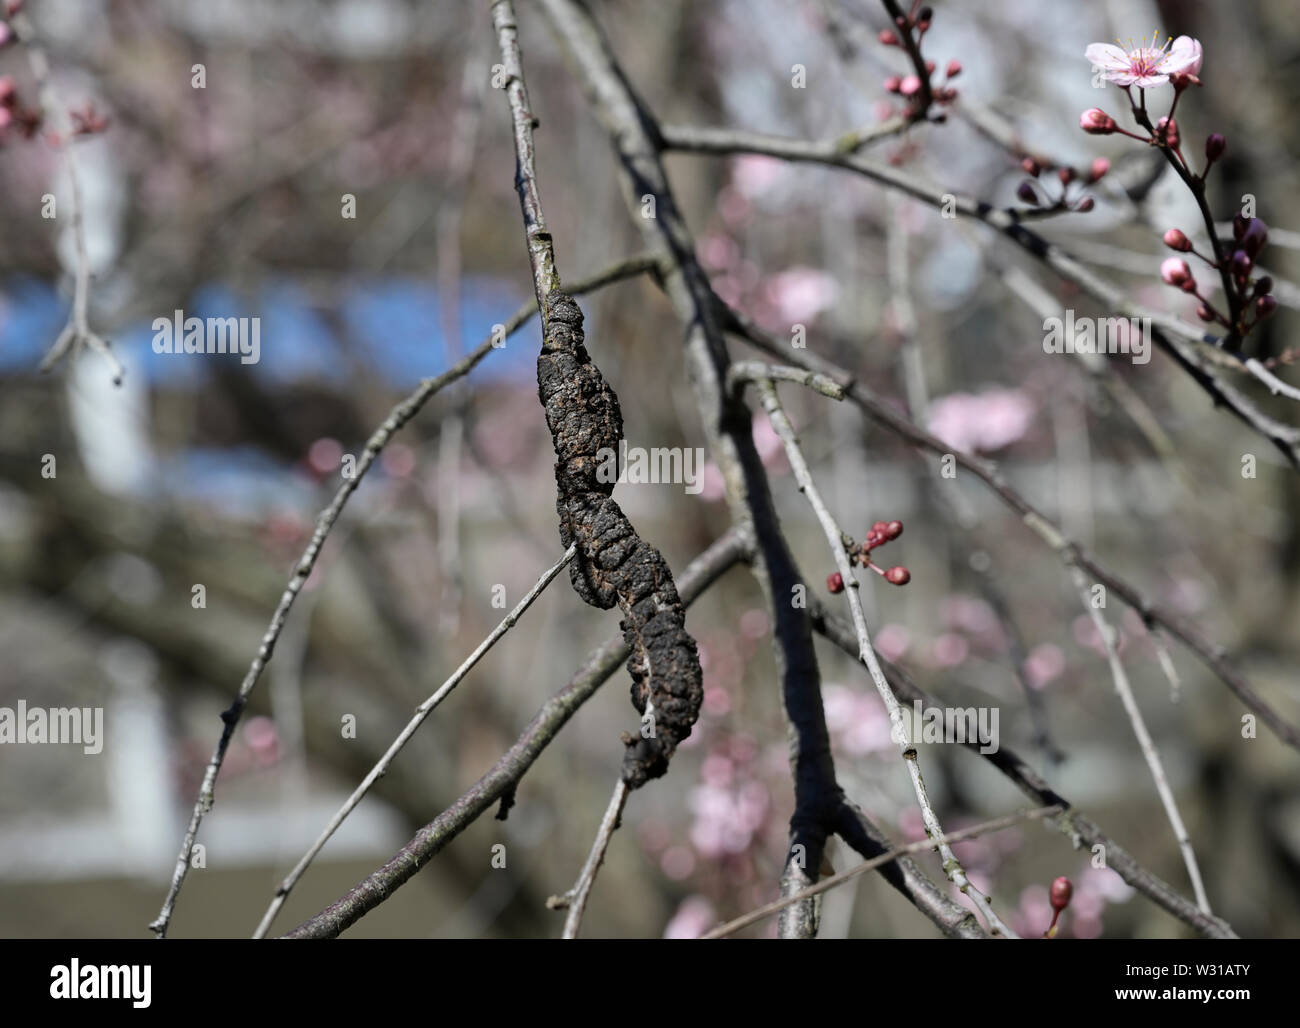 Black Knot Fungus, Dibotryon morbosum or Apiosporina morbosa, on flowering plum tree Stock Photo